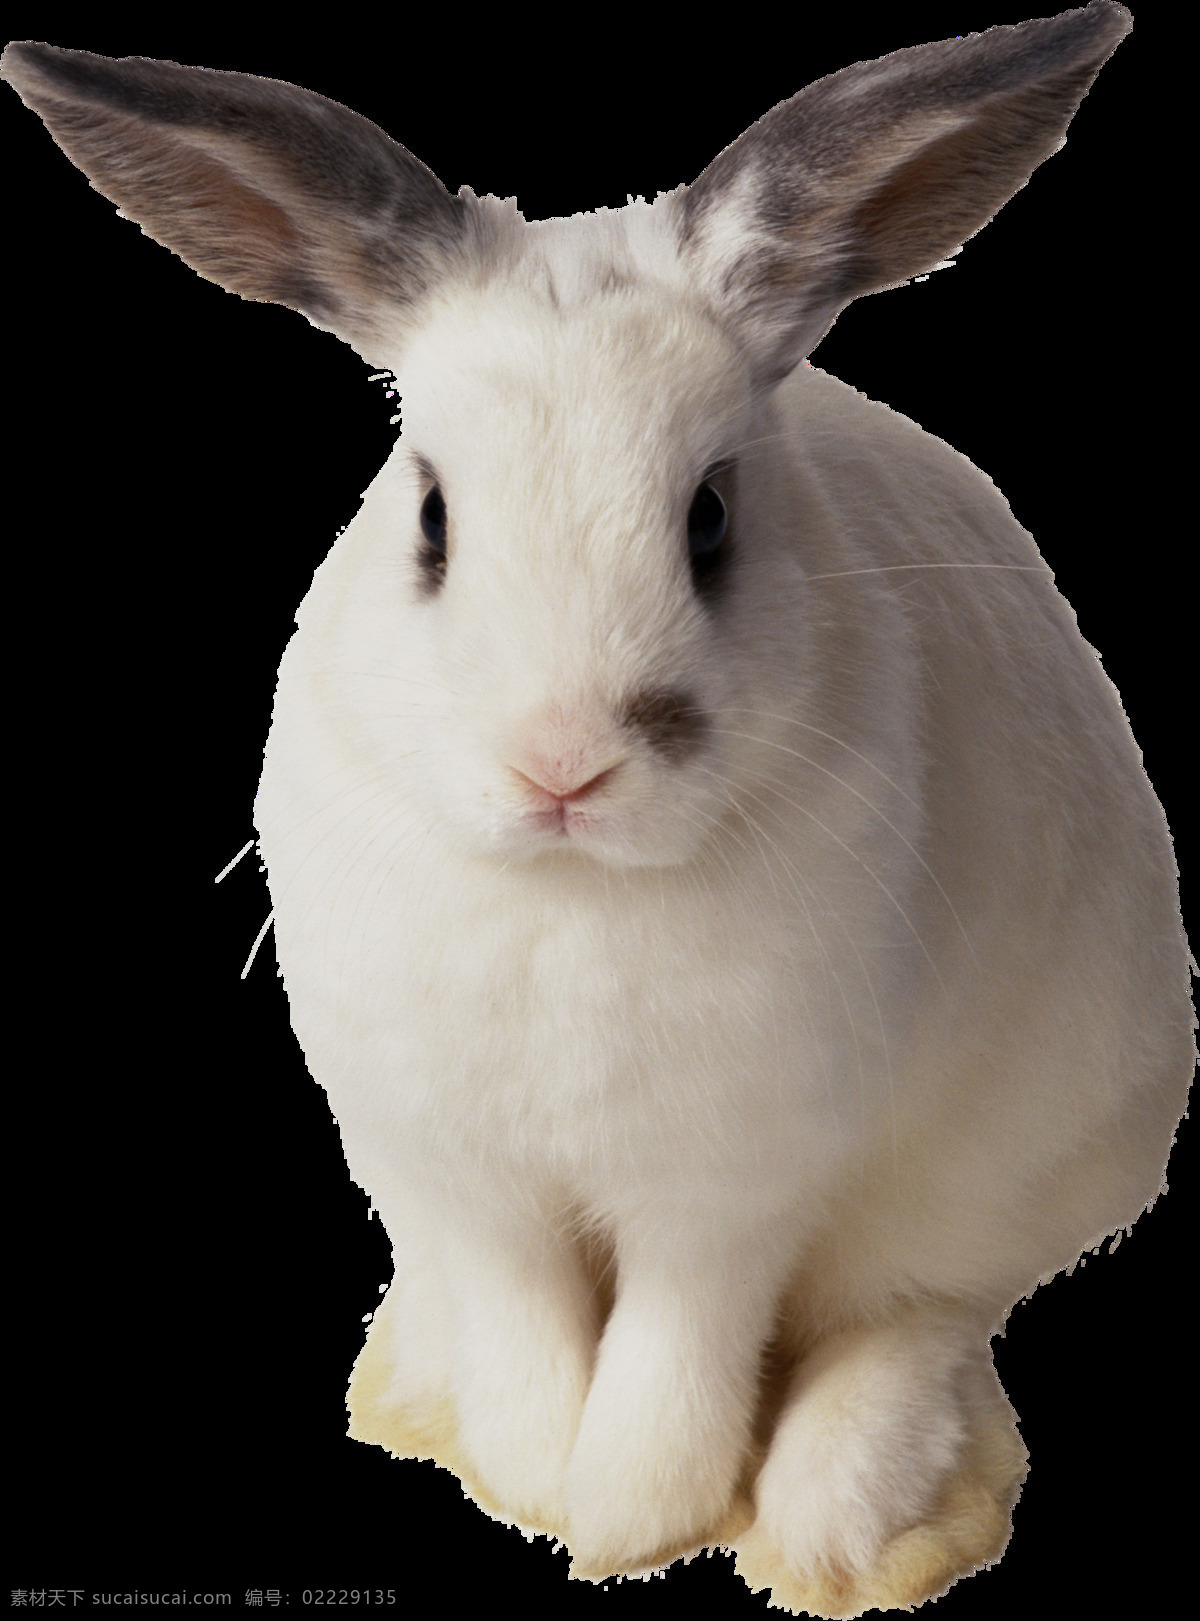 可爱 可爱的兔子 可爱小兔子 小兔子 小白兔 萌宠 小宝贝 小可爱 灰兔 肉兔 野兔 兔肉 家养宠物 家兔 垂耳兔 中毛兔 黄色兔子 小动物 宠物 荷兰兔 宠物兔子 复活节 可爱兔子 黑兔 大白兔 生物世界 野生动物 动物